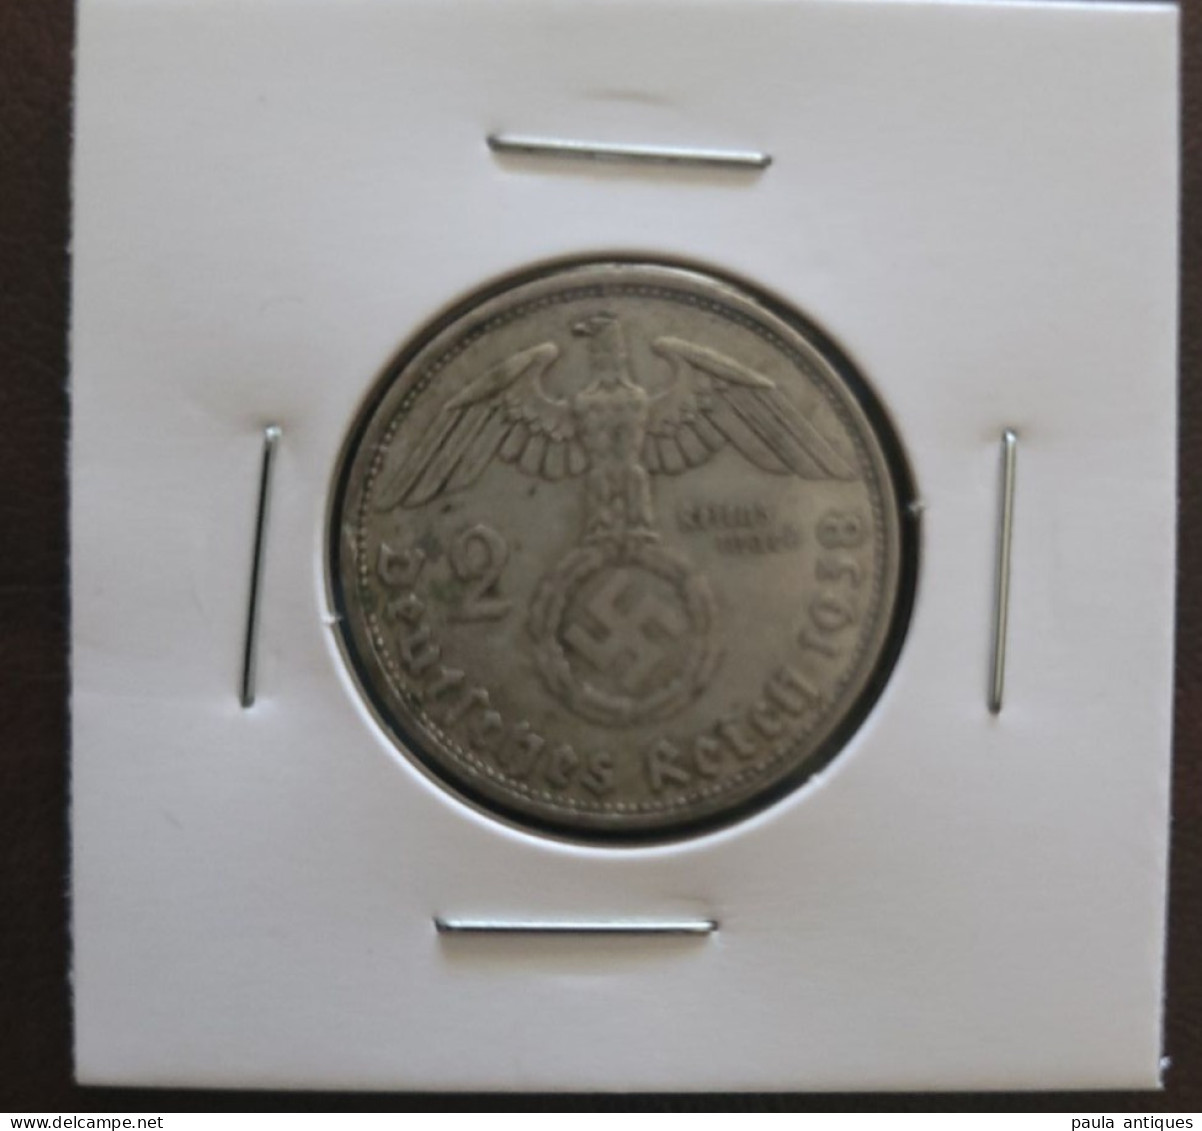 2 Reichmark 1838 Germany Third Reich - 2 Reichsmark